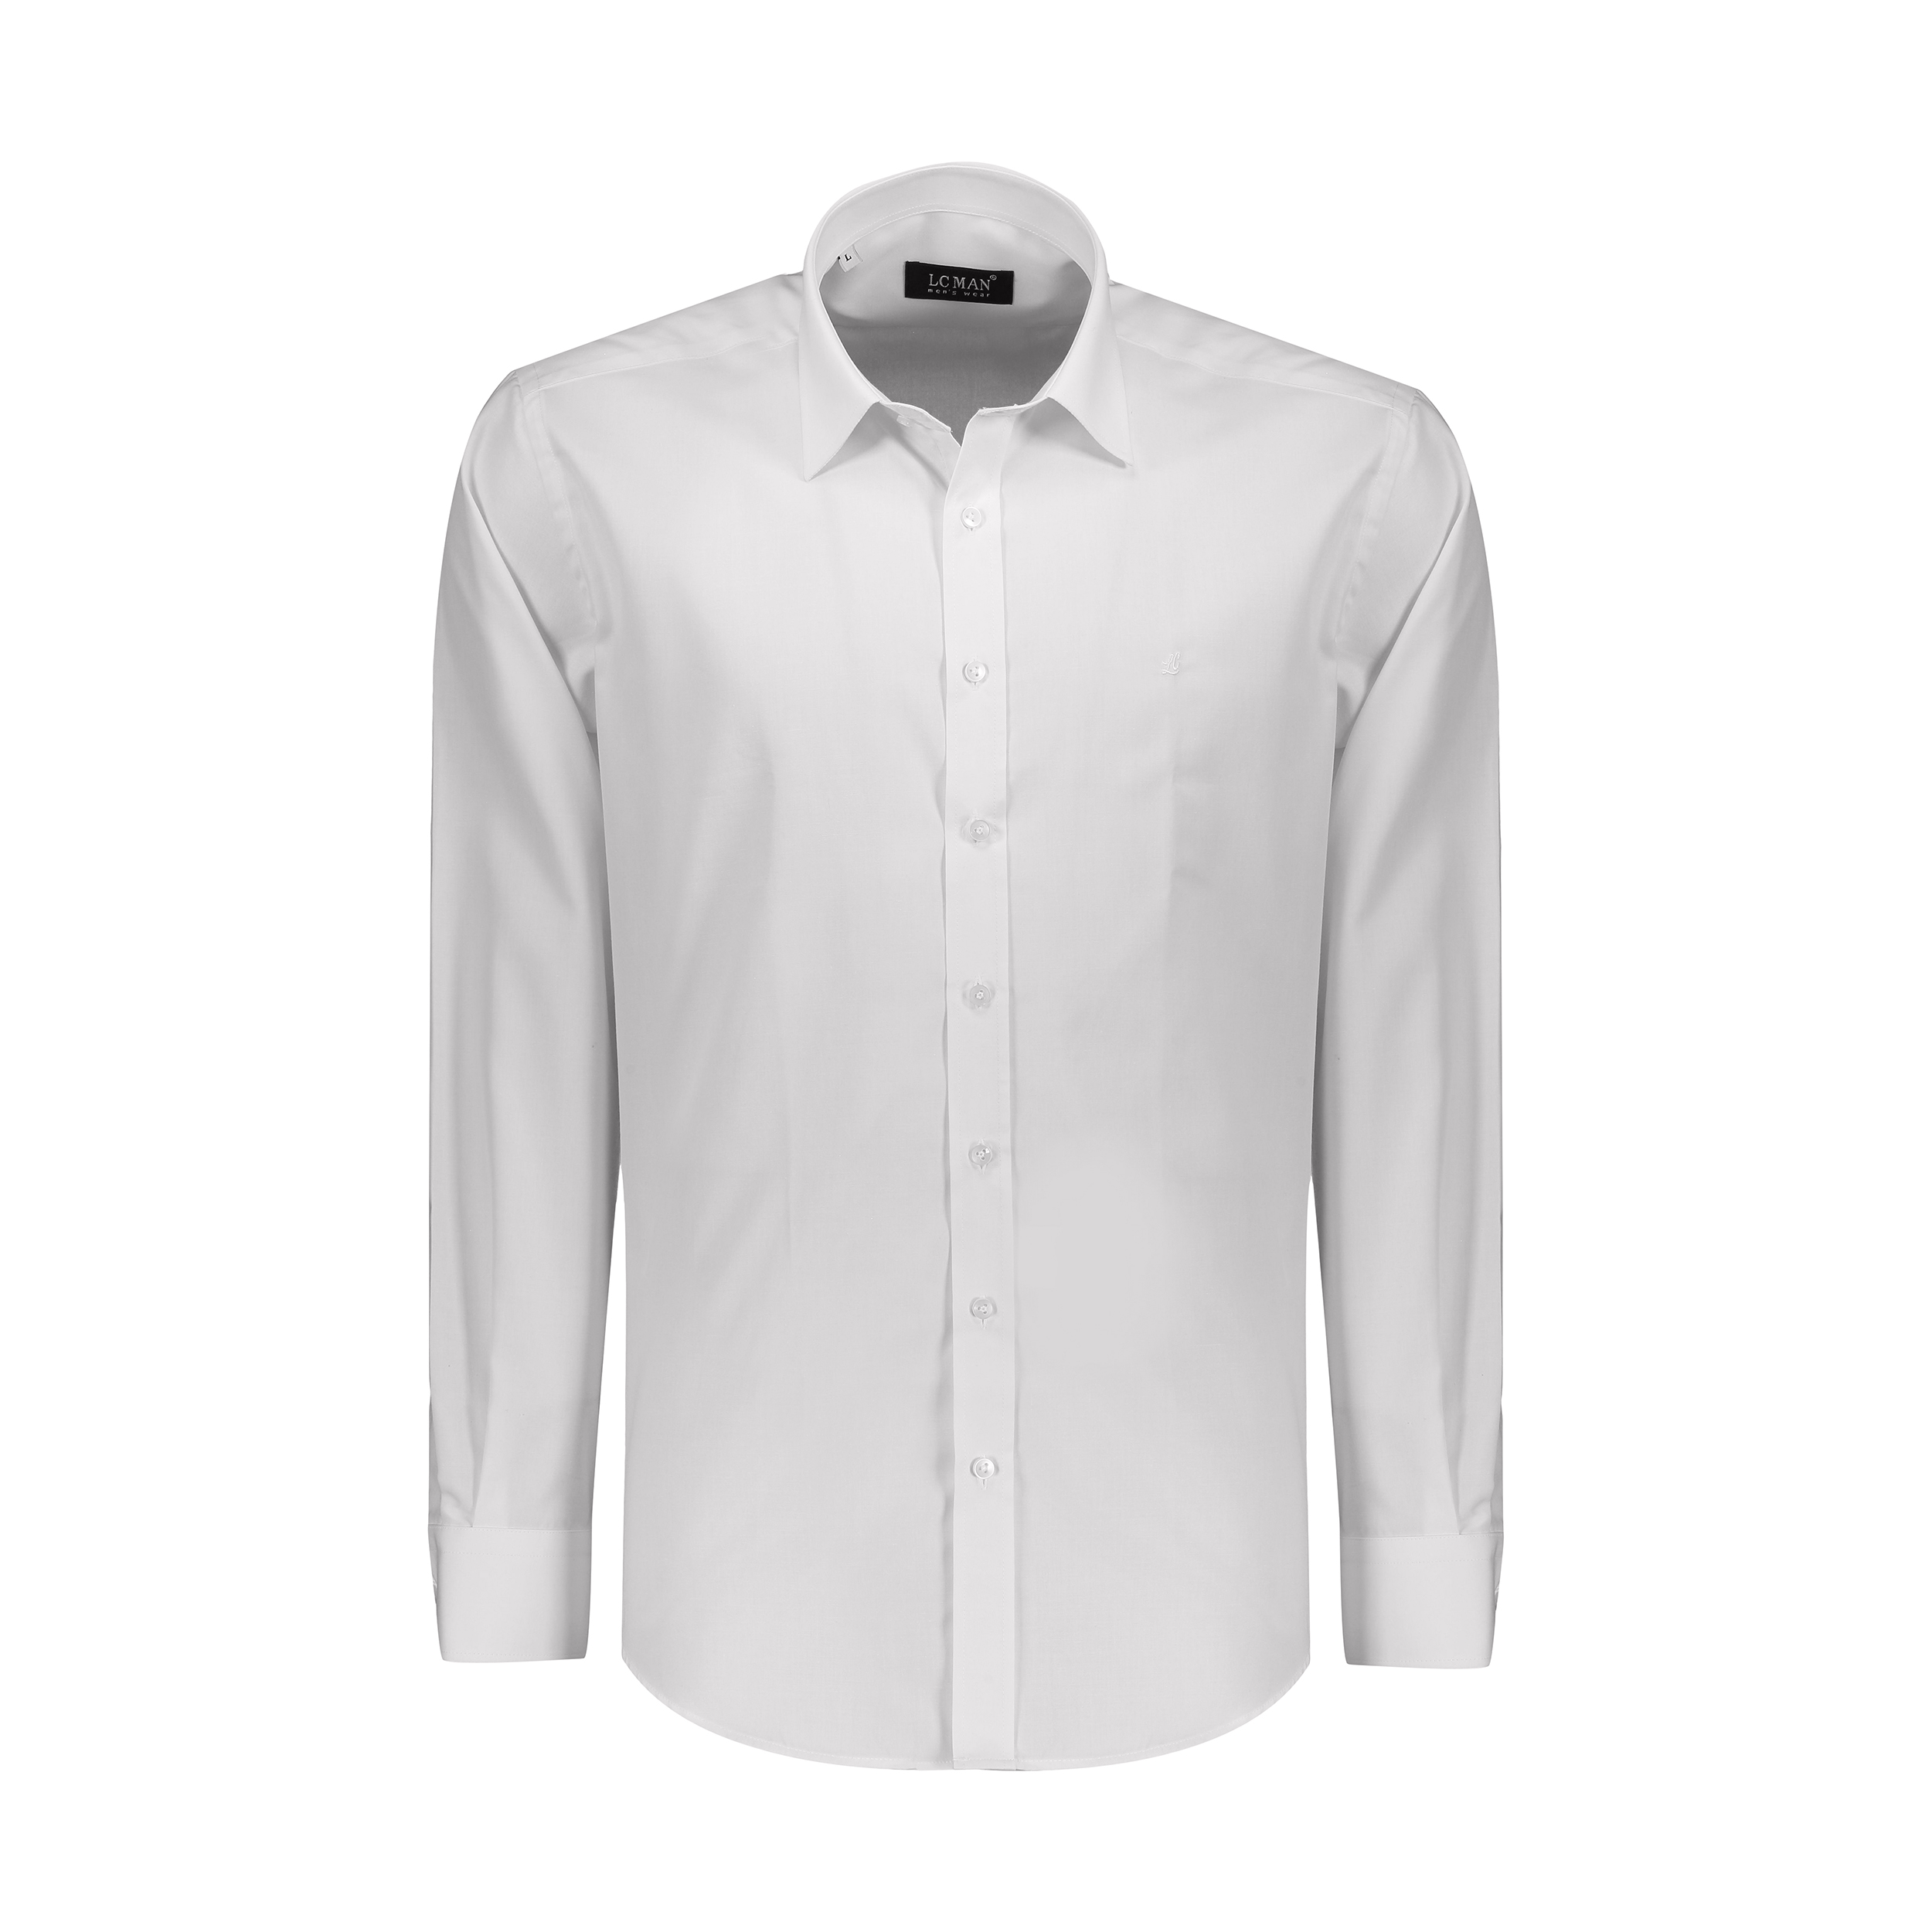 پیراهن مردانه ال سی من مدل 02181197-001